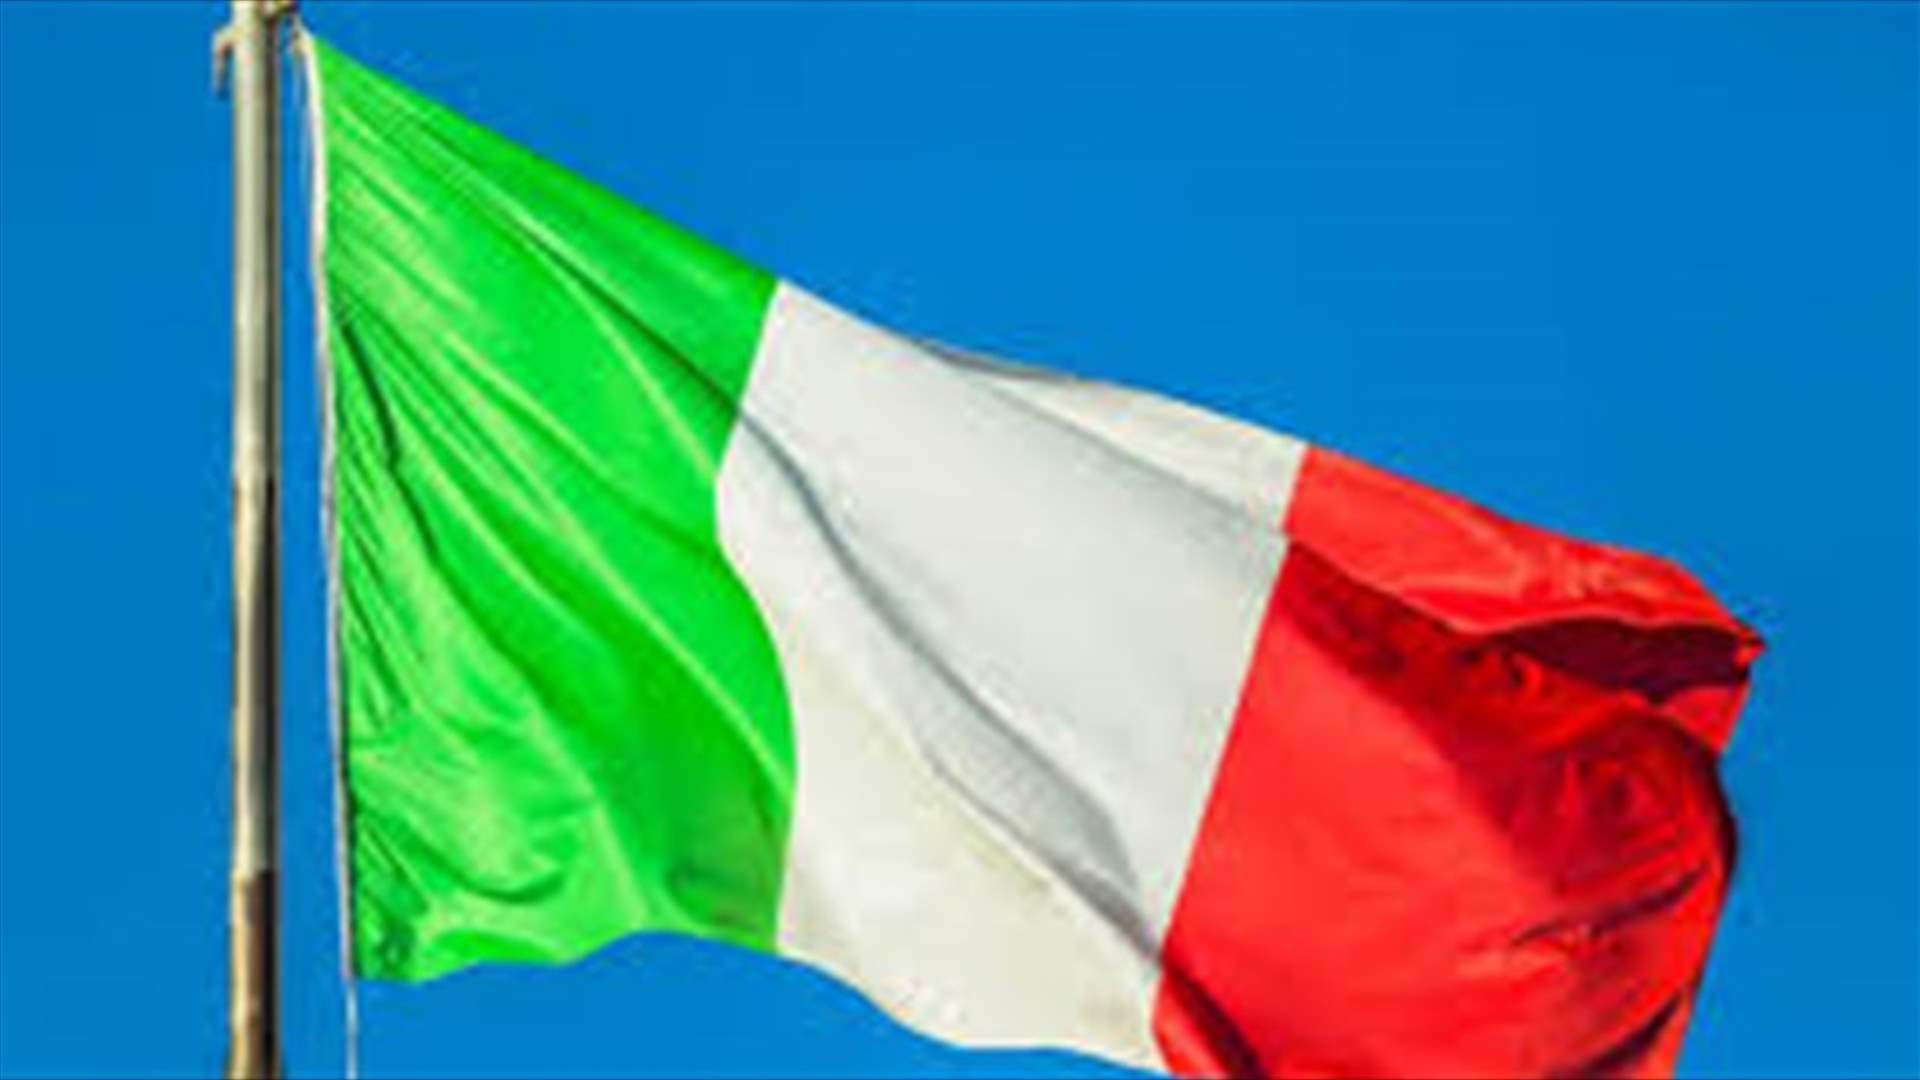 بسبب كورونا... إيطاليا تغلق موانئها أمام سفن المهاجرين